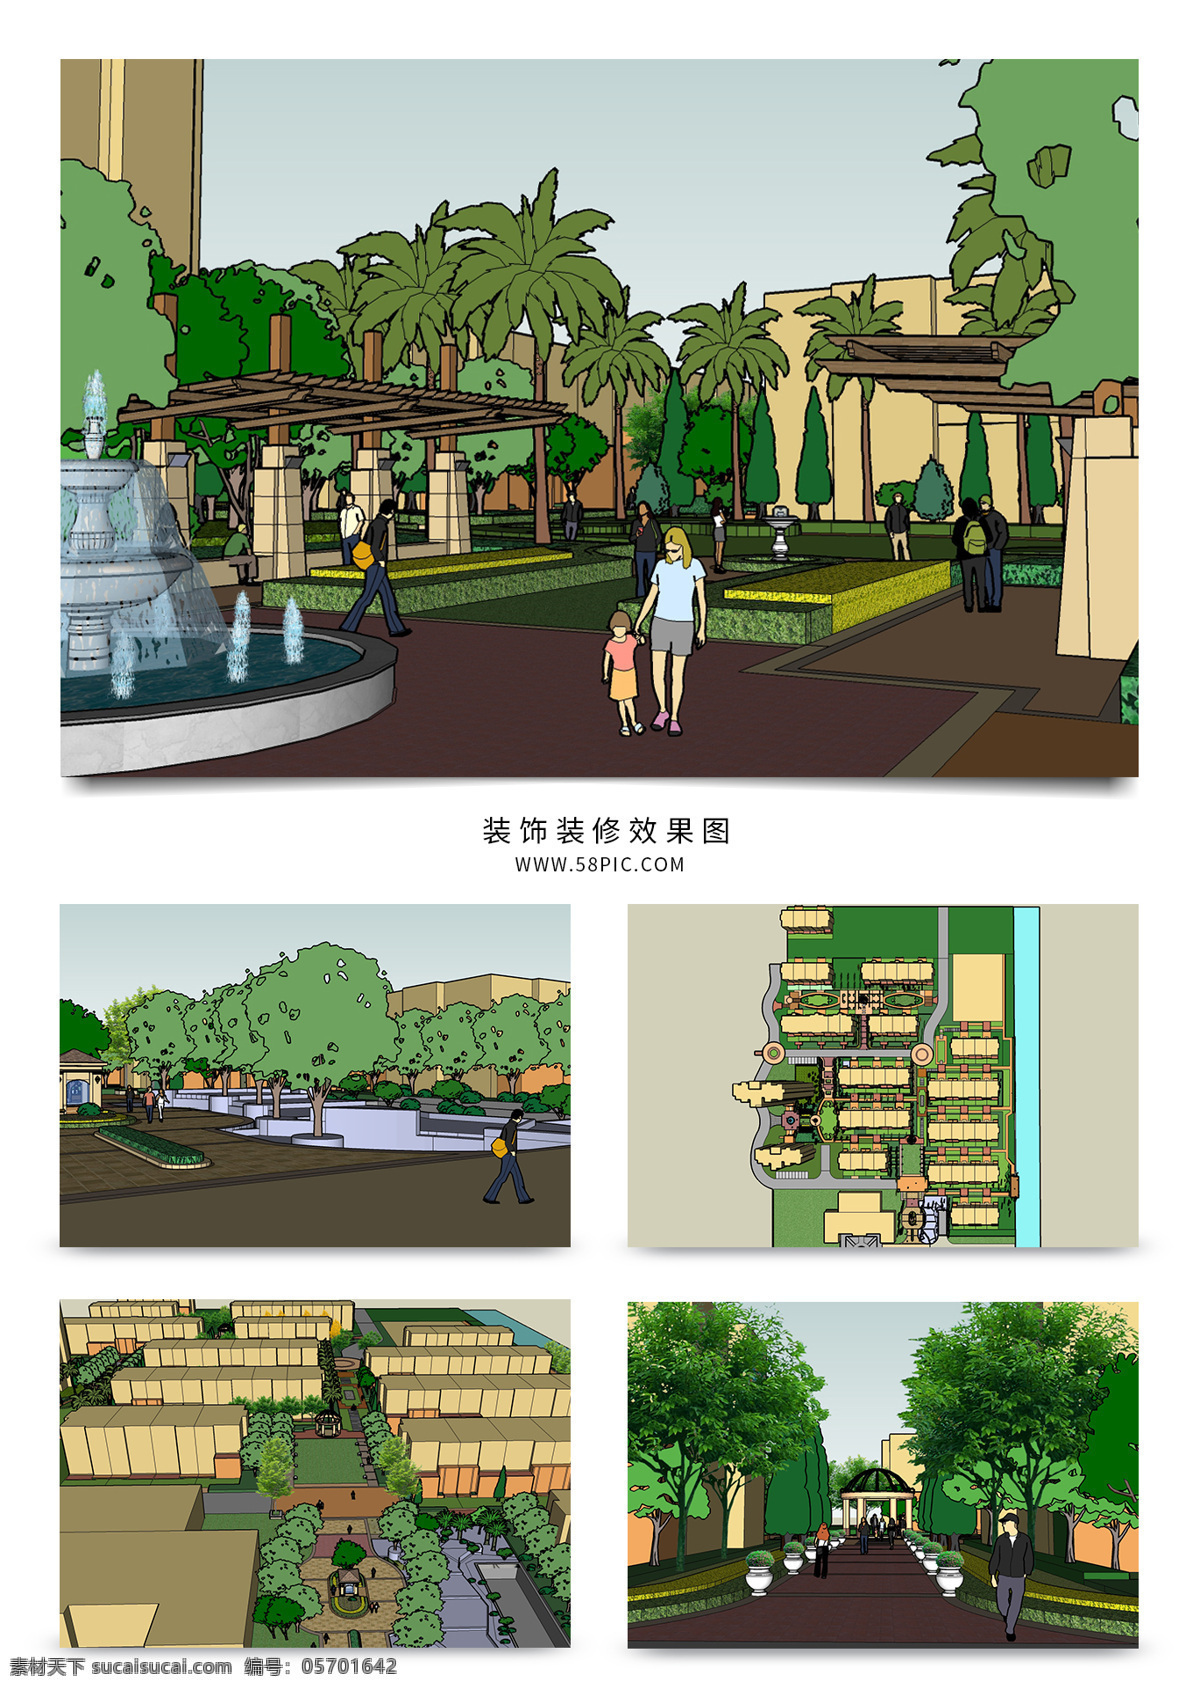 高档 小区 景观设计 树木环绕 水景喷泉 绿色葱葱